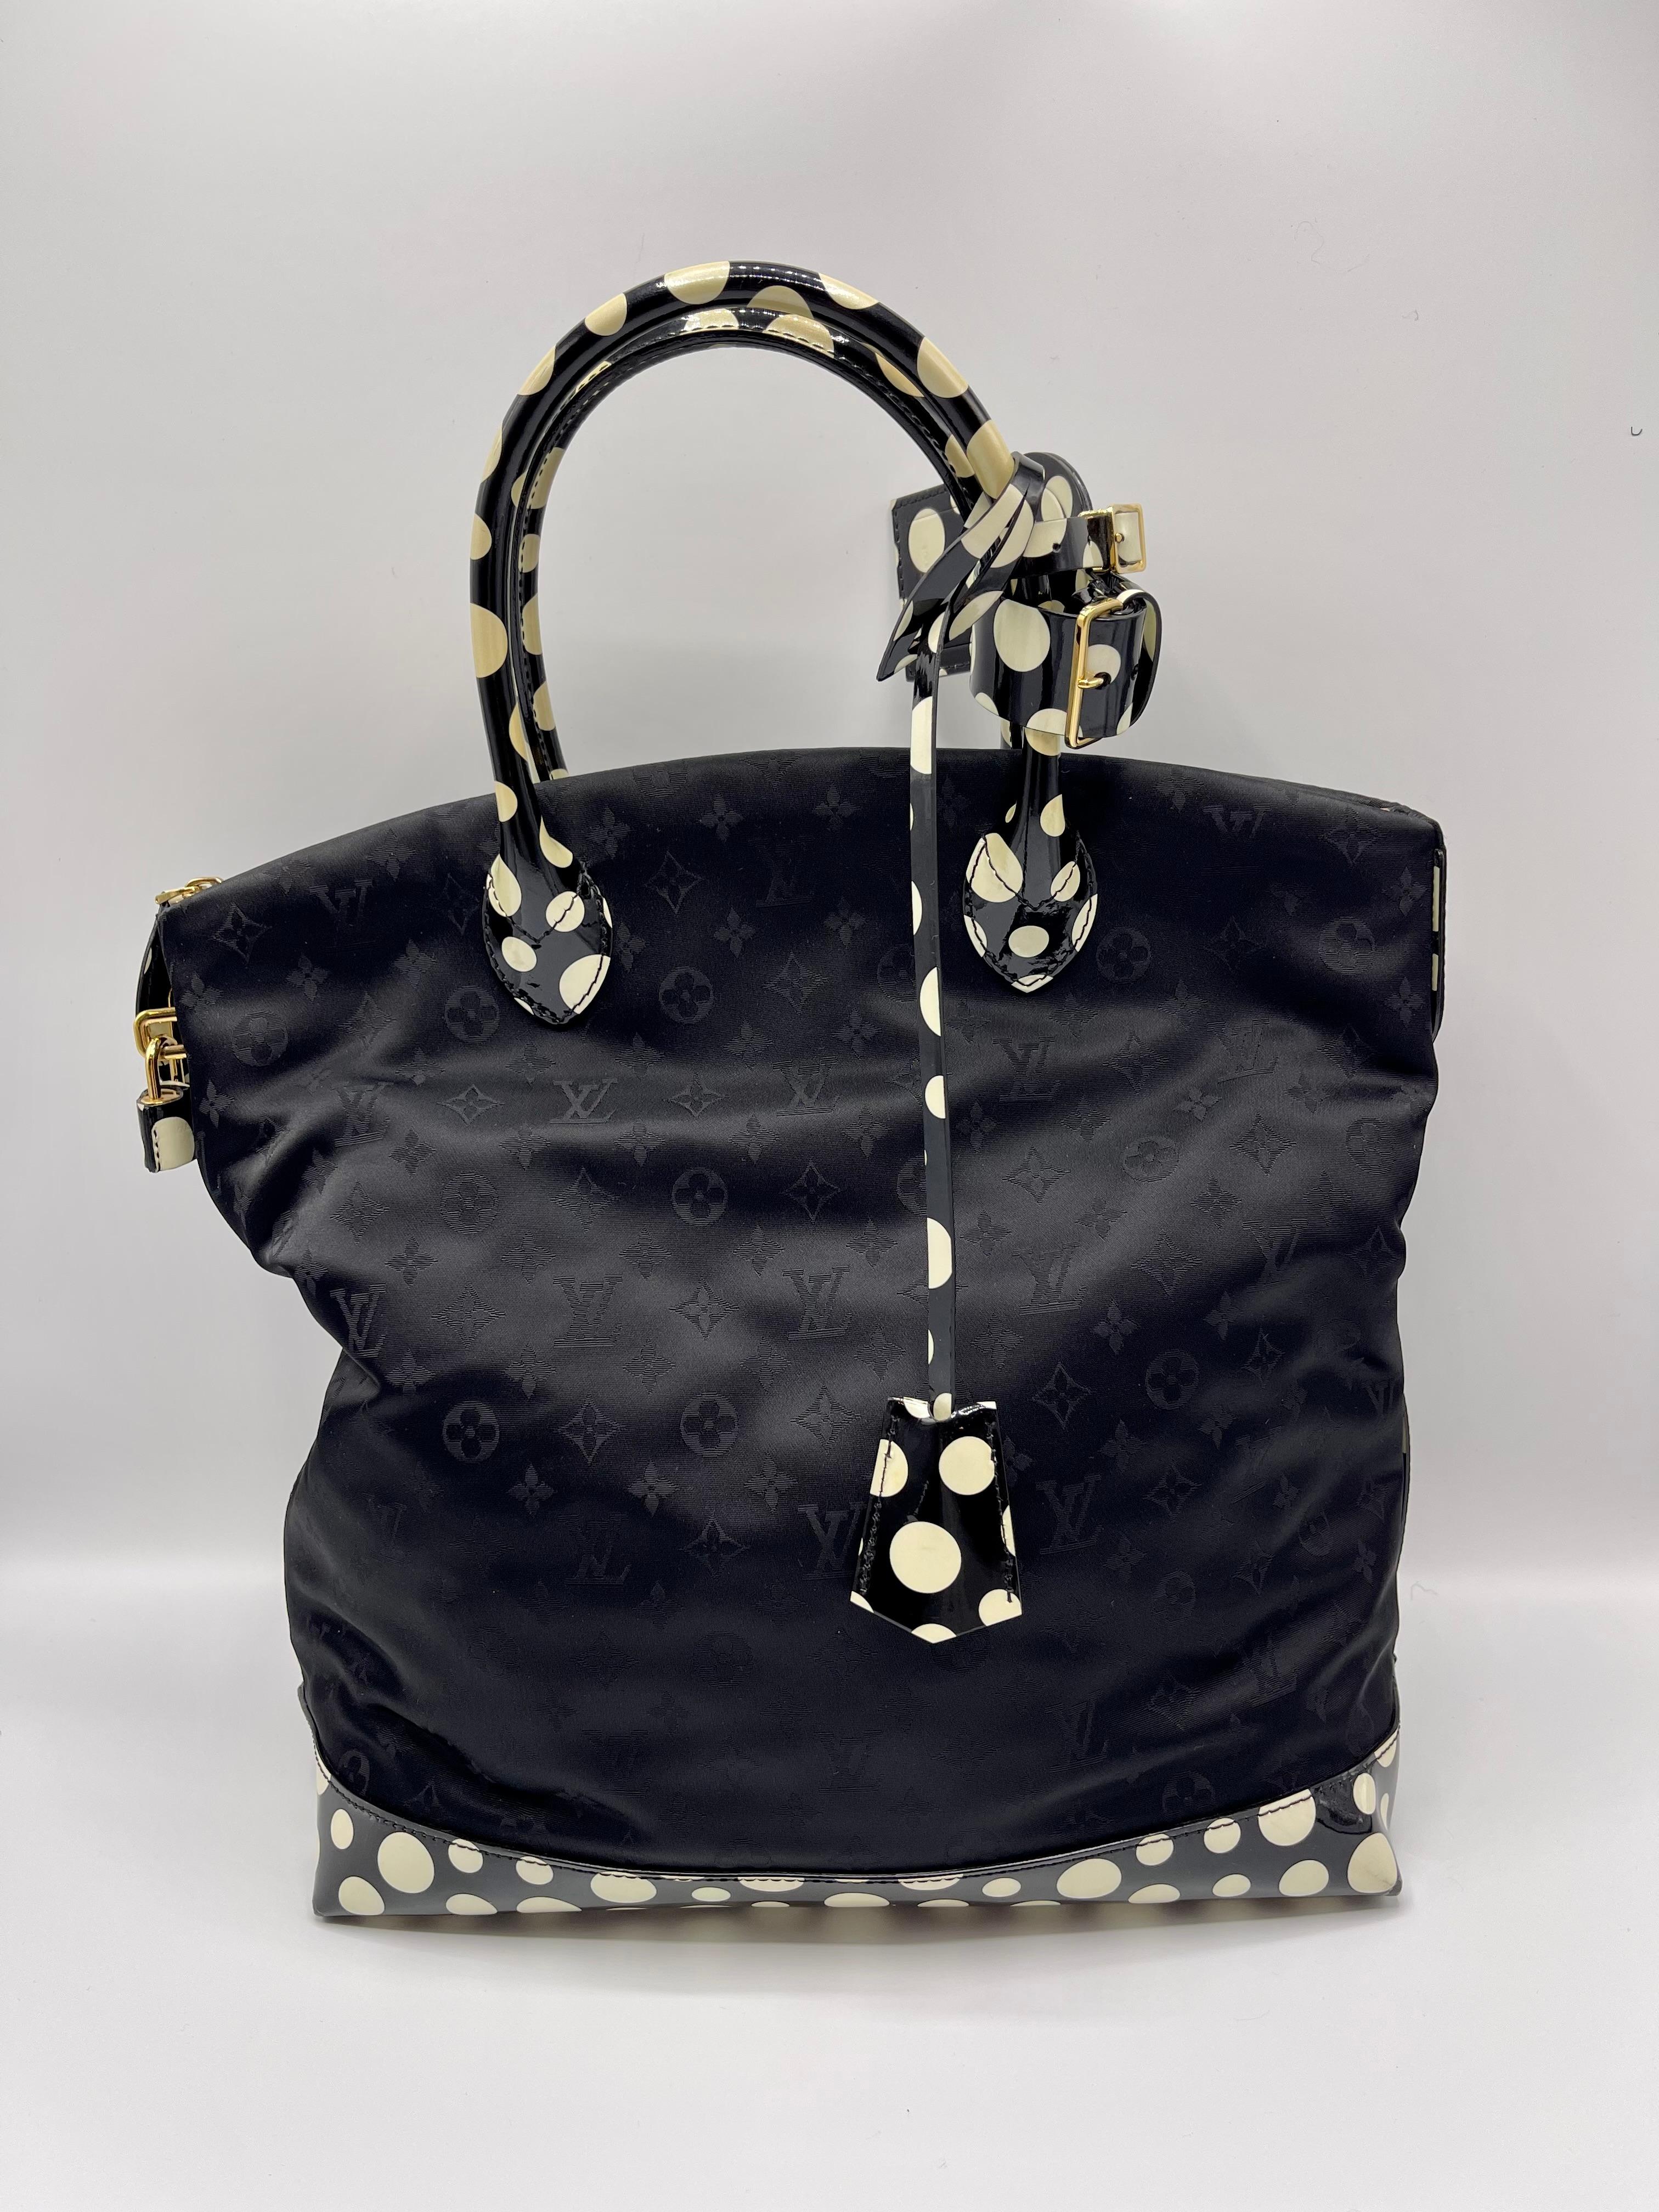 Sac Yayoi Kusama Limited Edition Condit Louis Vuitton, en bon état.
Ce sac Whiting est fabriqué en nylon monogramme noir et comporte des poignées, une base et une bordure en cuir verni à pois noirs et blancs. En outre, ce sac est doté d'une